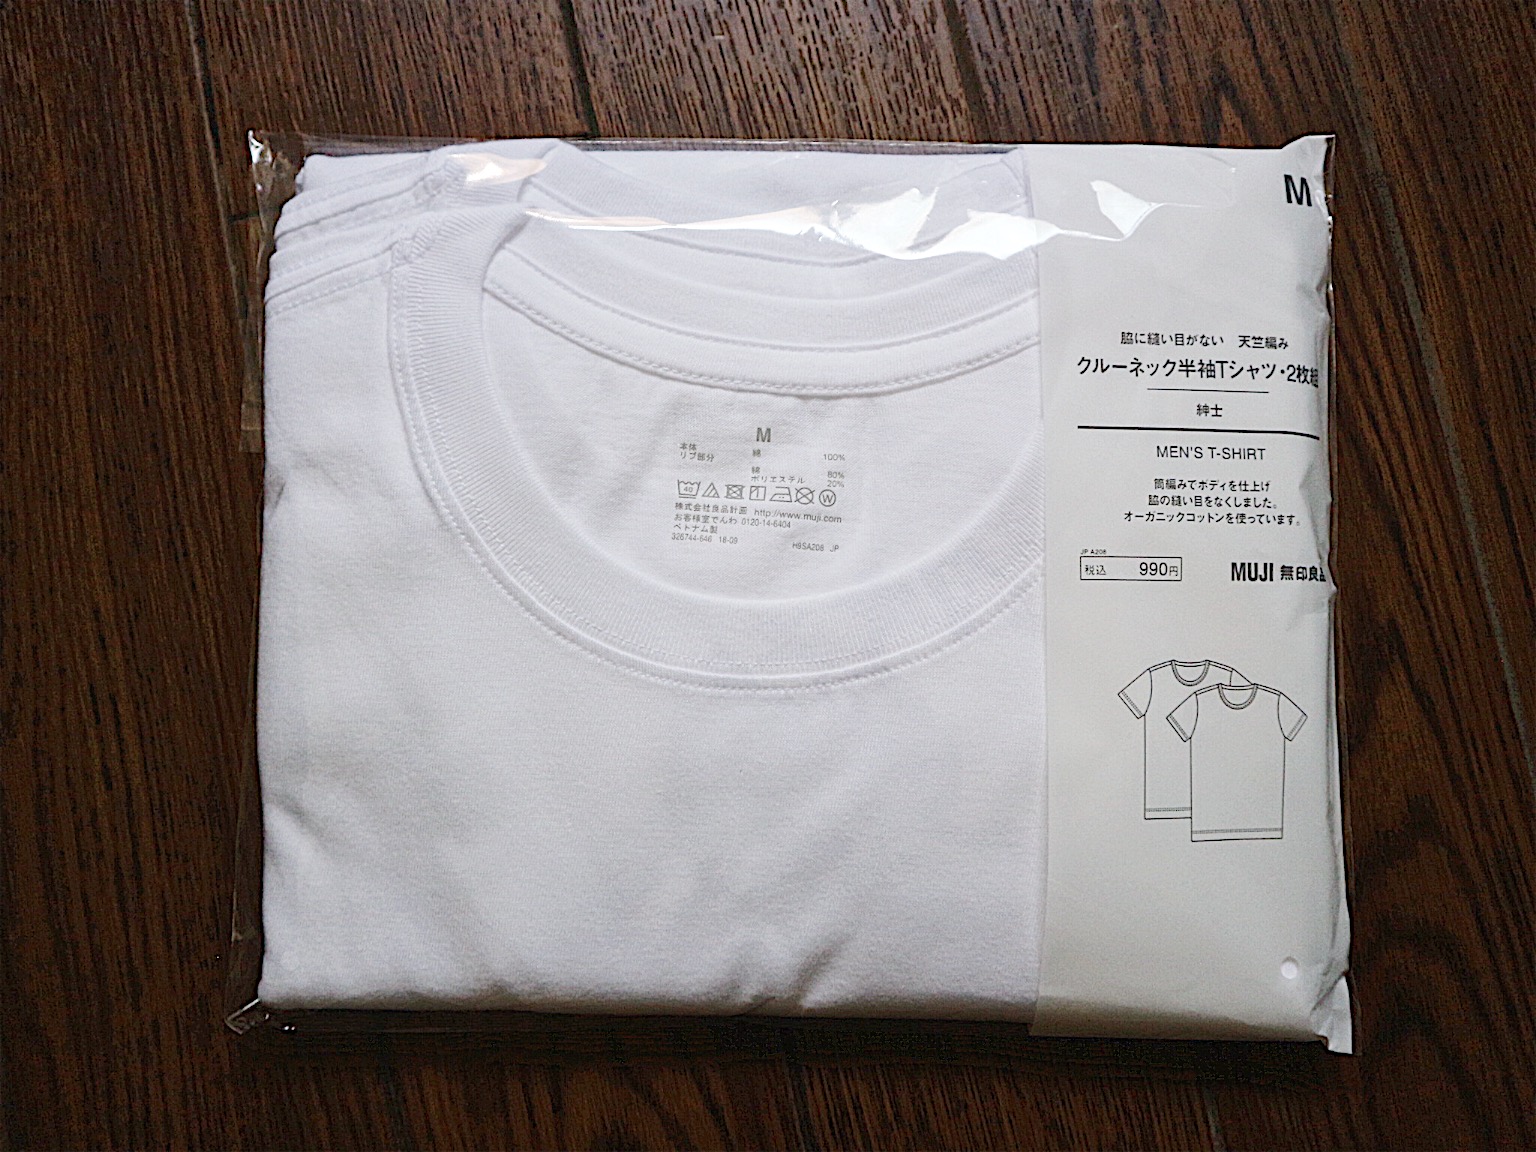 2枚で990円 無印良品の天竺編み白無地tシャツを徹底レビュー Tower Reports